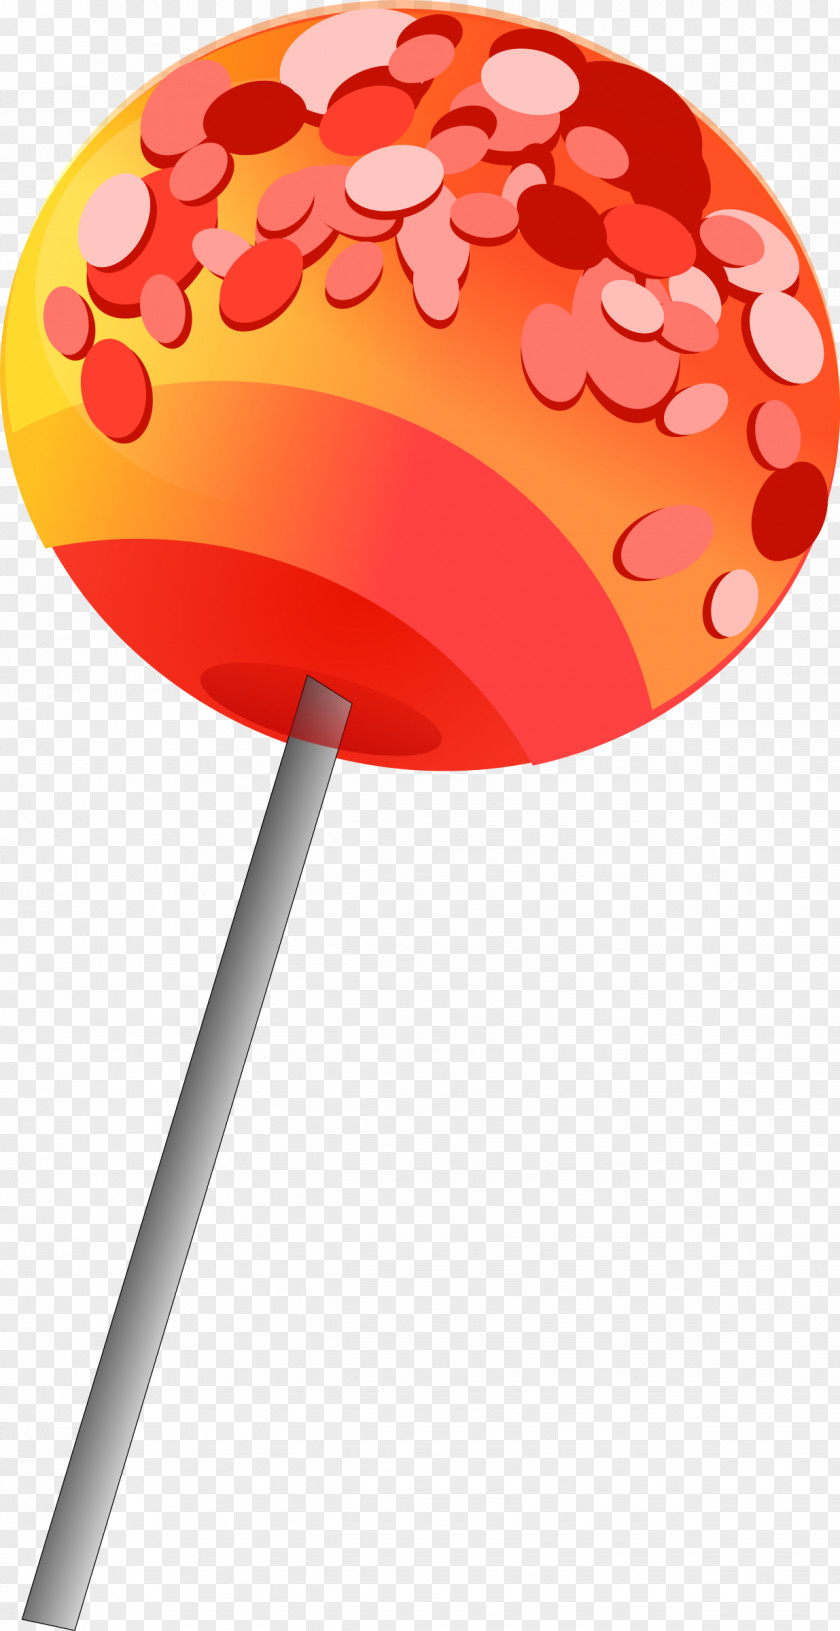 Lollipop Candy Cane Stick Clip Art PNG